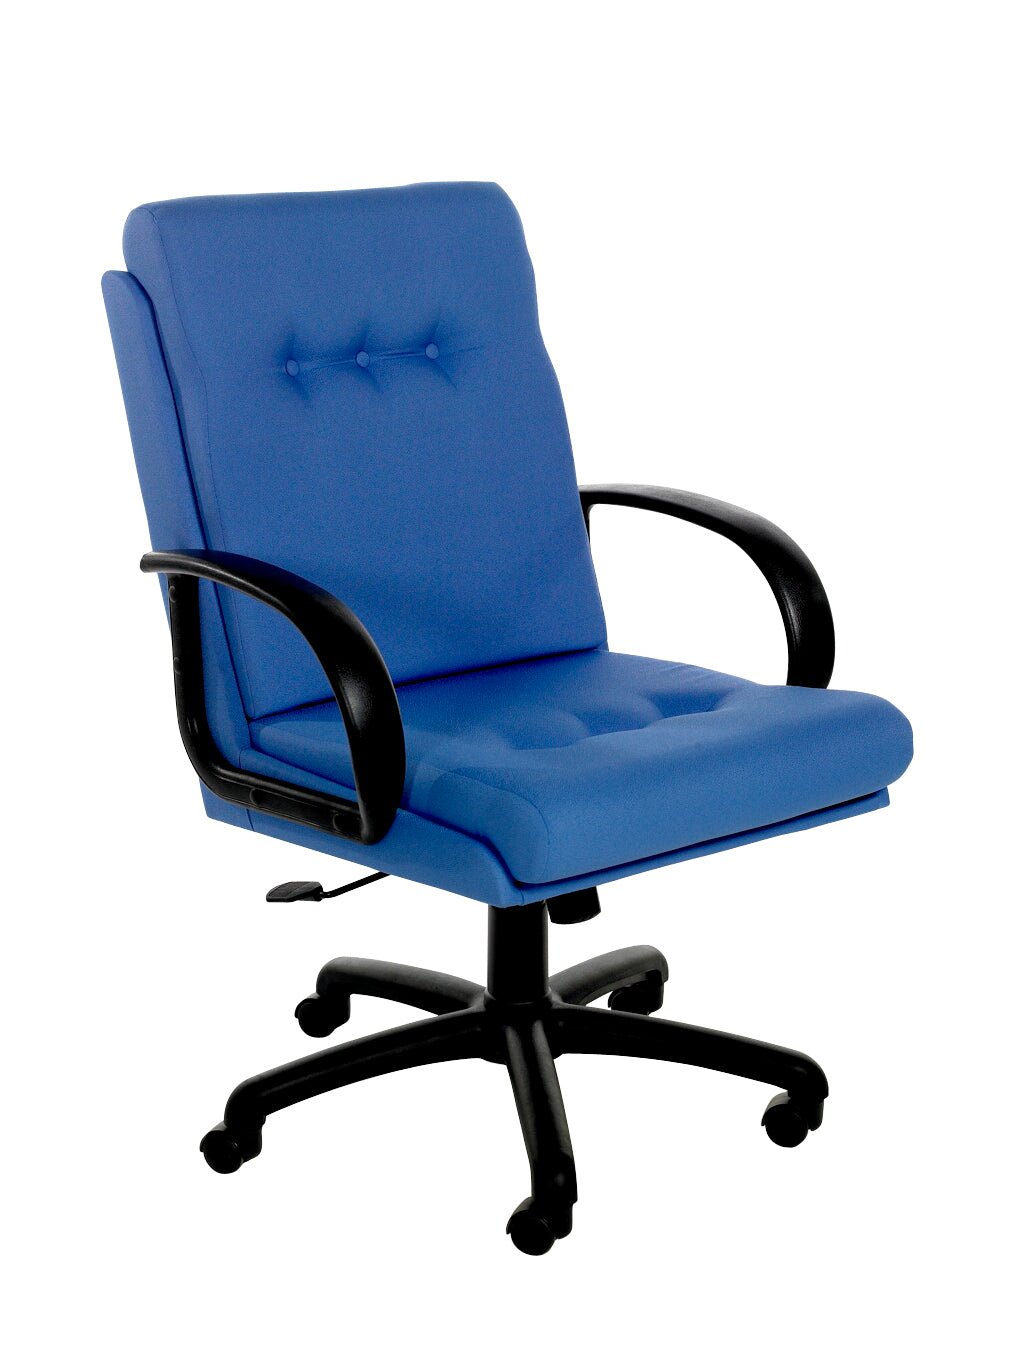 Executive Fabric Arm Chair